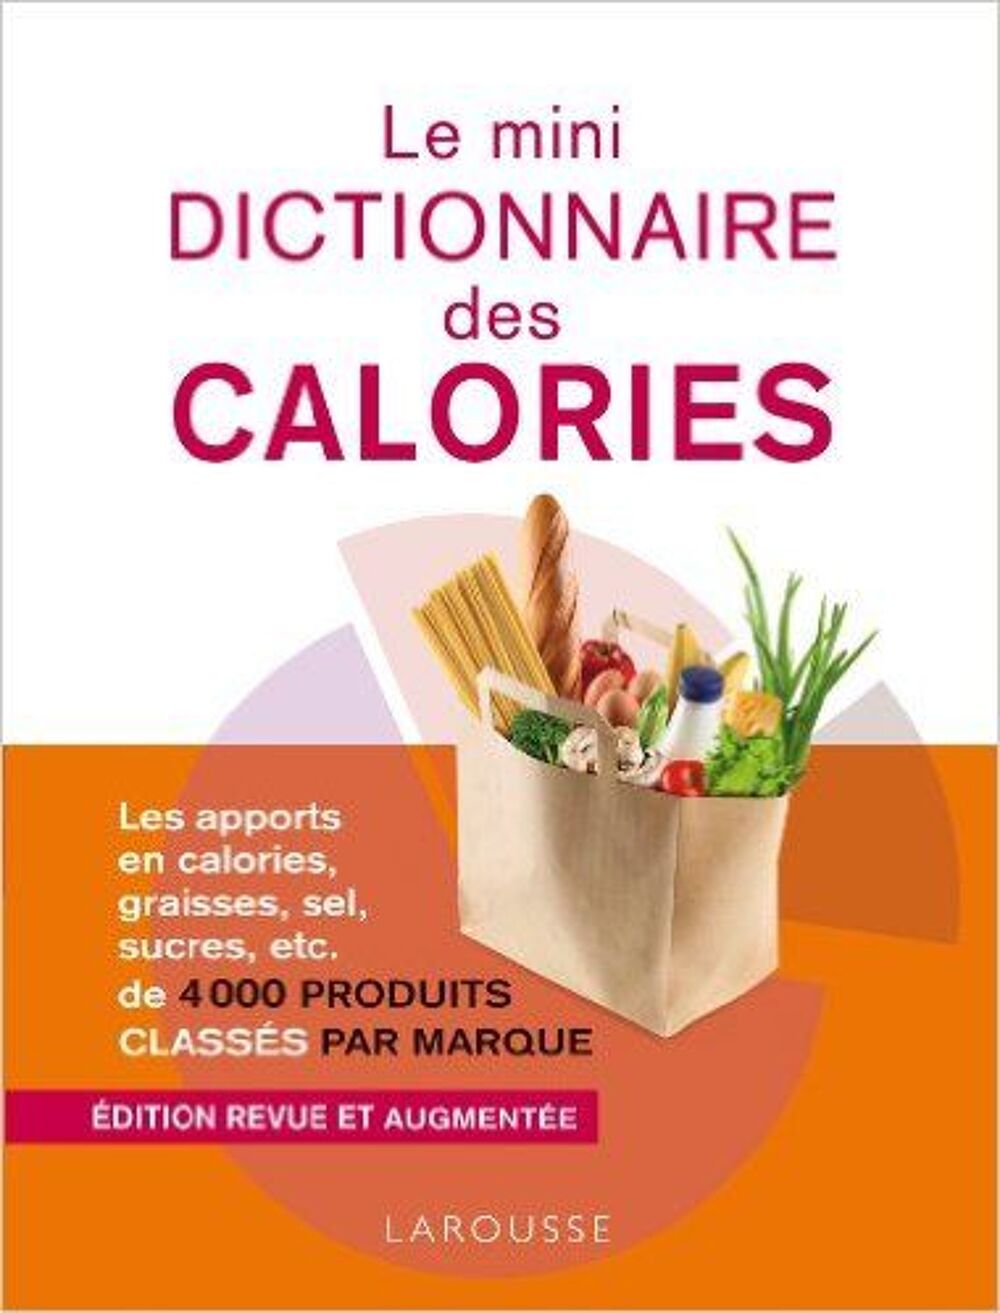 Le mini dictionnaire des calories, nouvelle &eacute;dition
Livres et BD